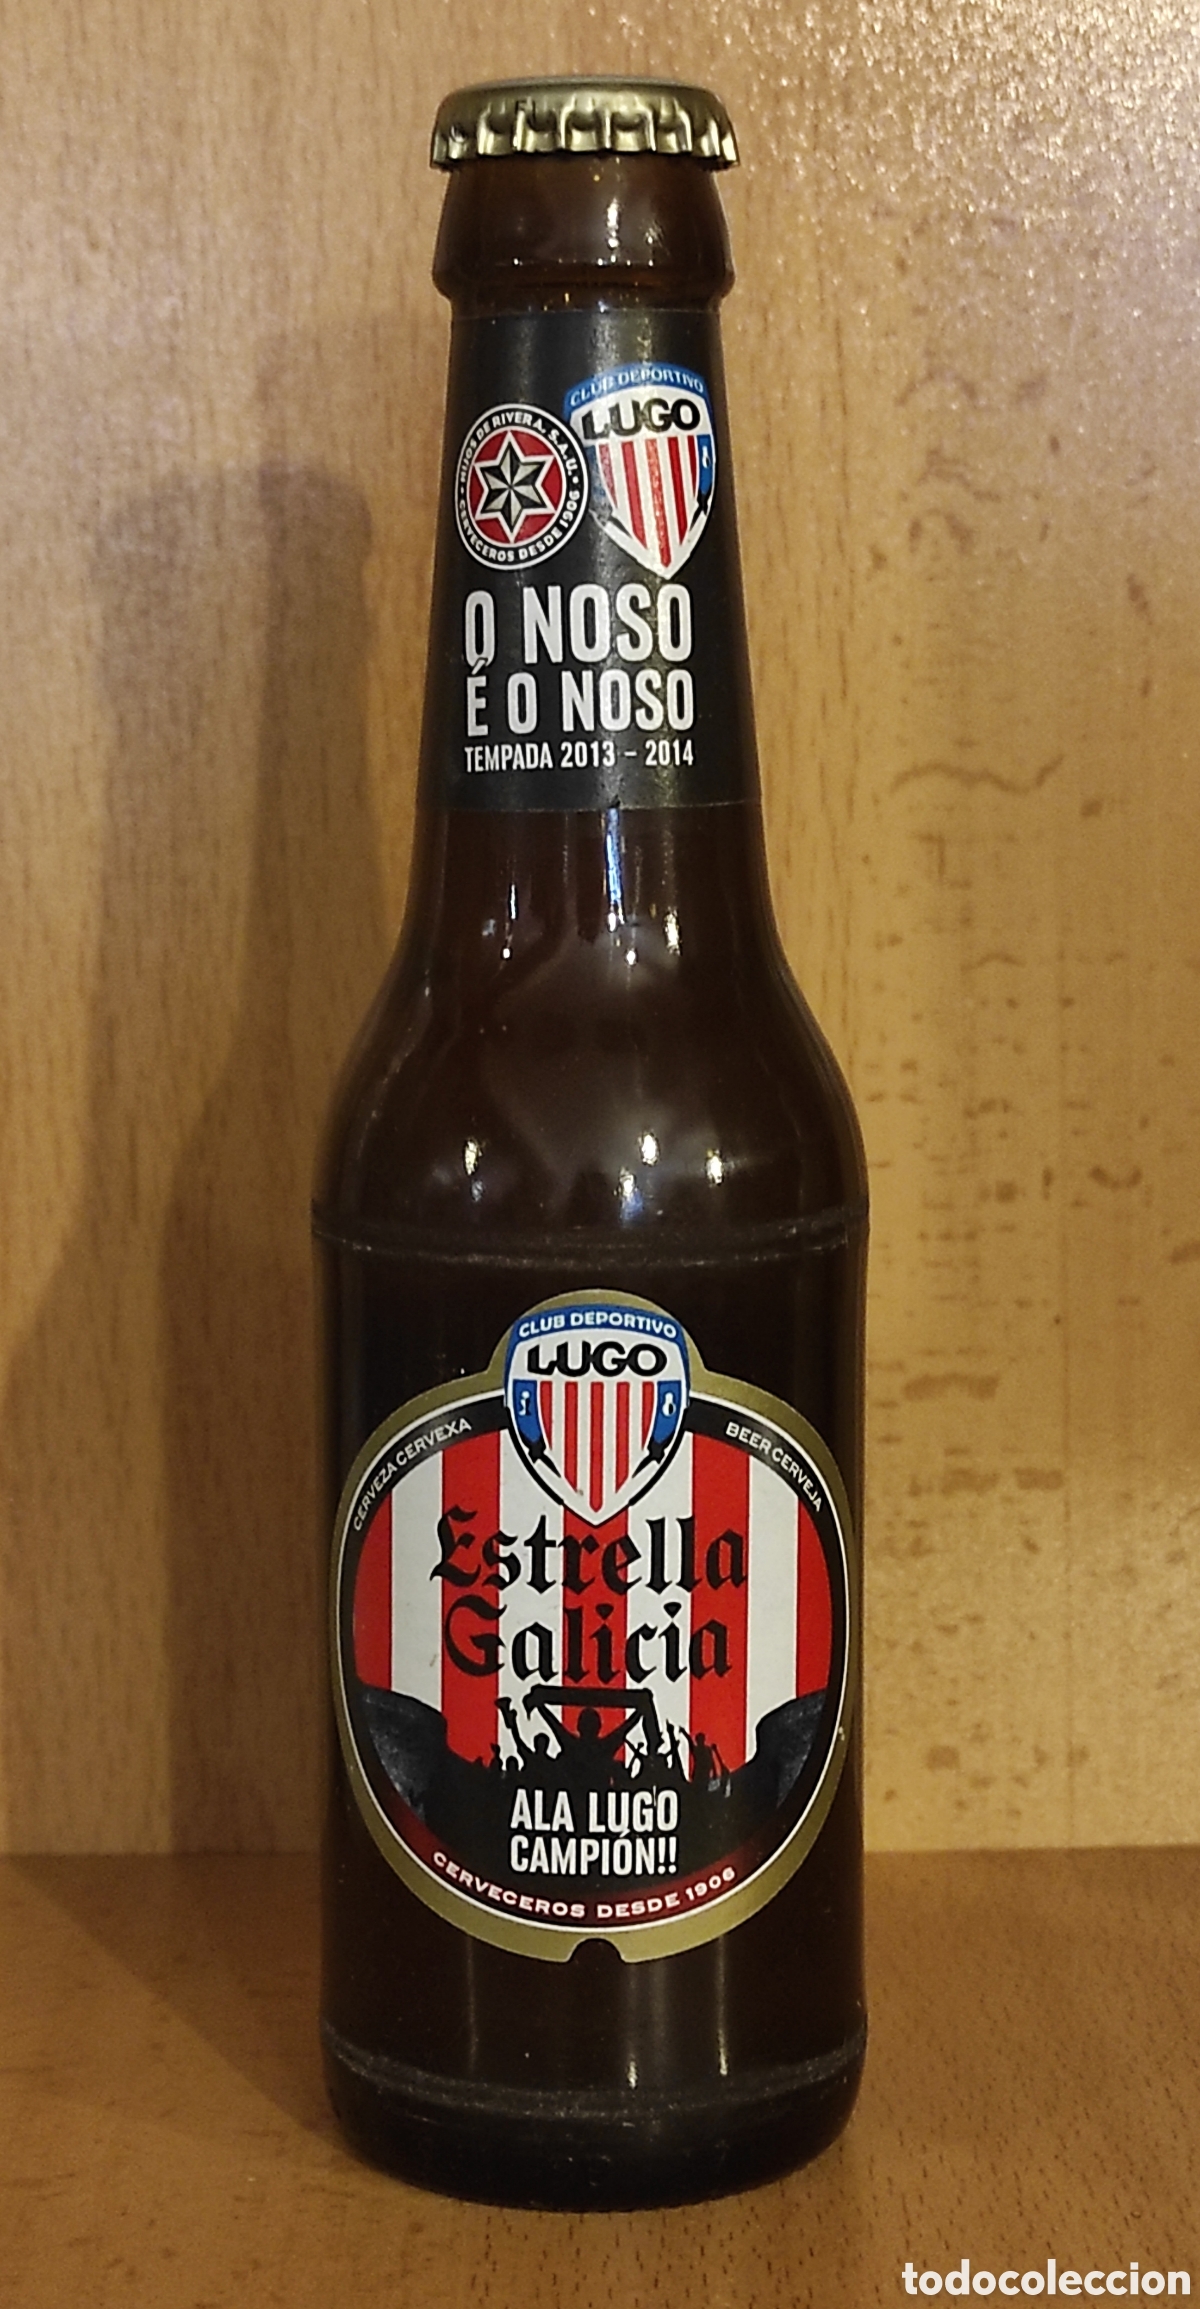 estrella galicia - cd lugo - 2013 2014 - botell - Buy Breweriana and beer  collectibles on todocoleccion